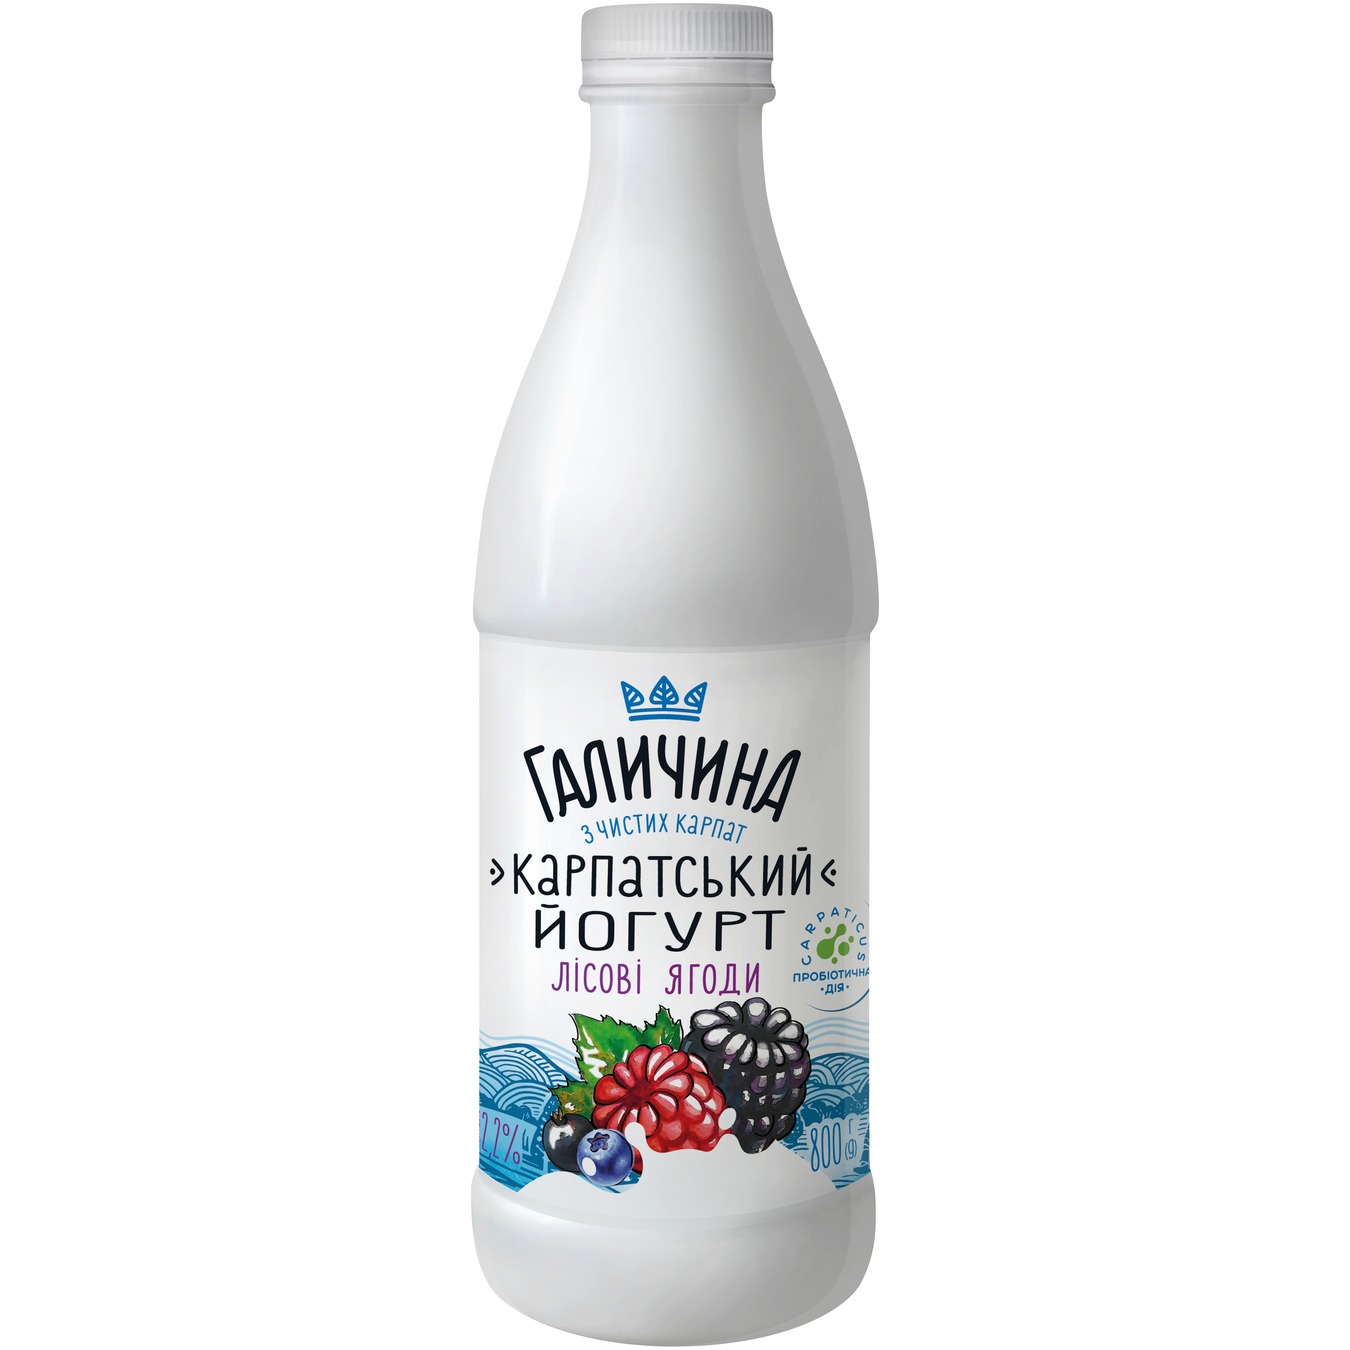 Йогурт Галичина Карпатский Лесная ягода 2,2% 800г